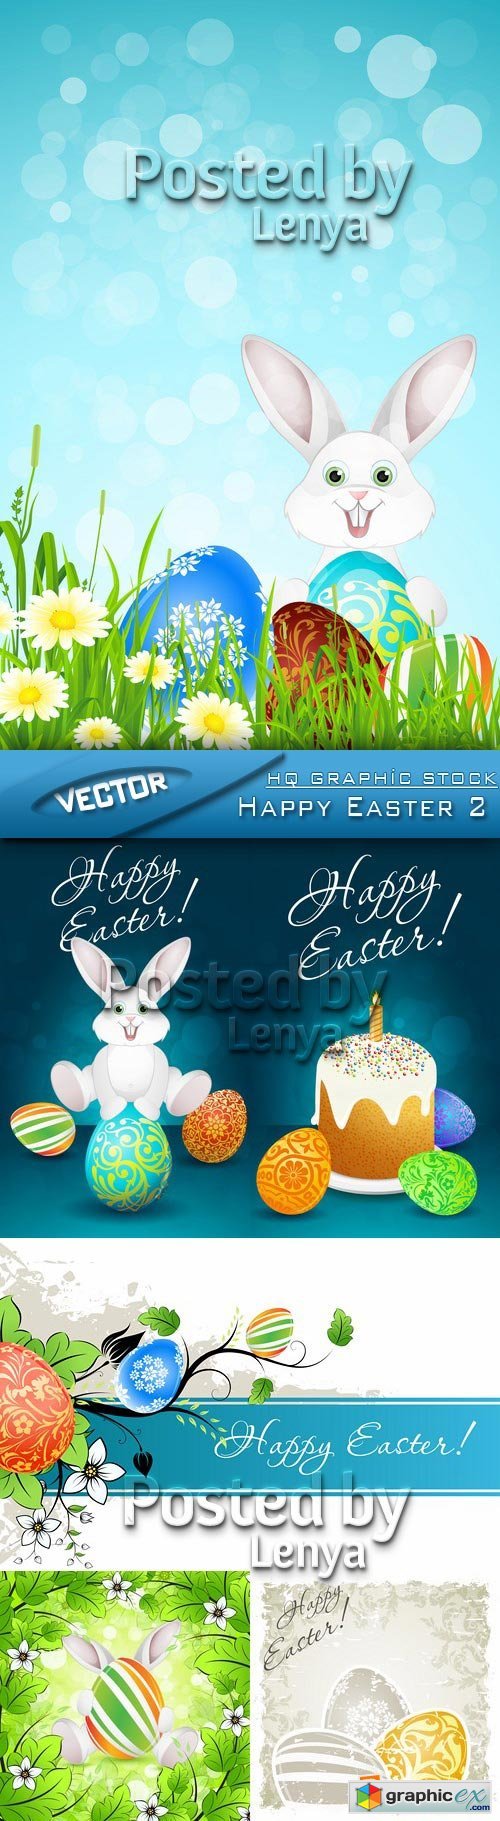 Stock Vector - Happy Easter 2